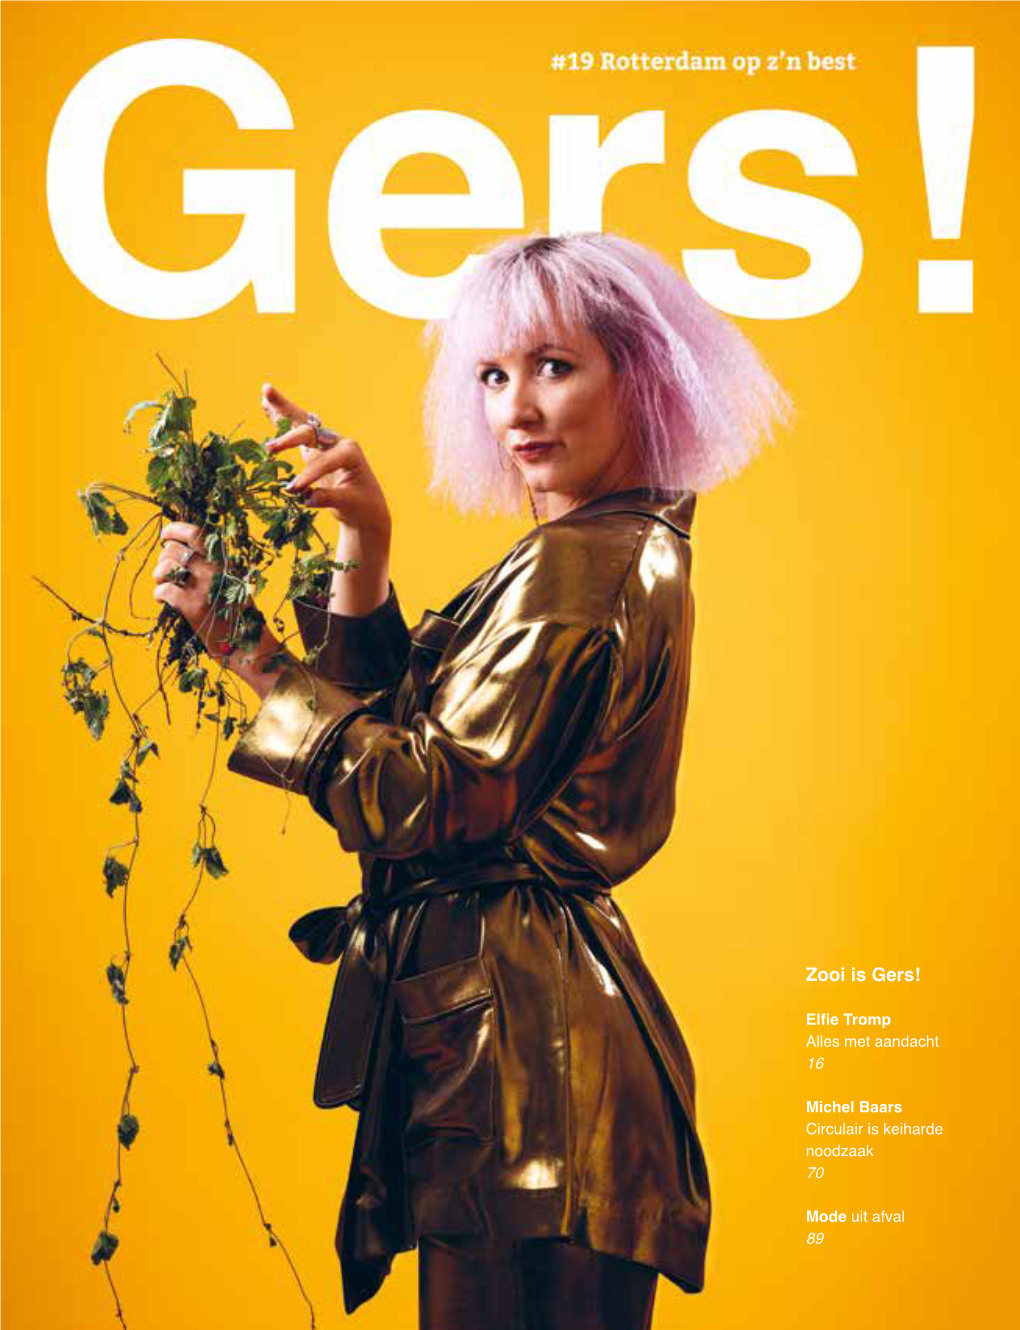 Bekijk Het Gouden Gers! Magazine